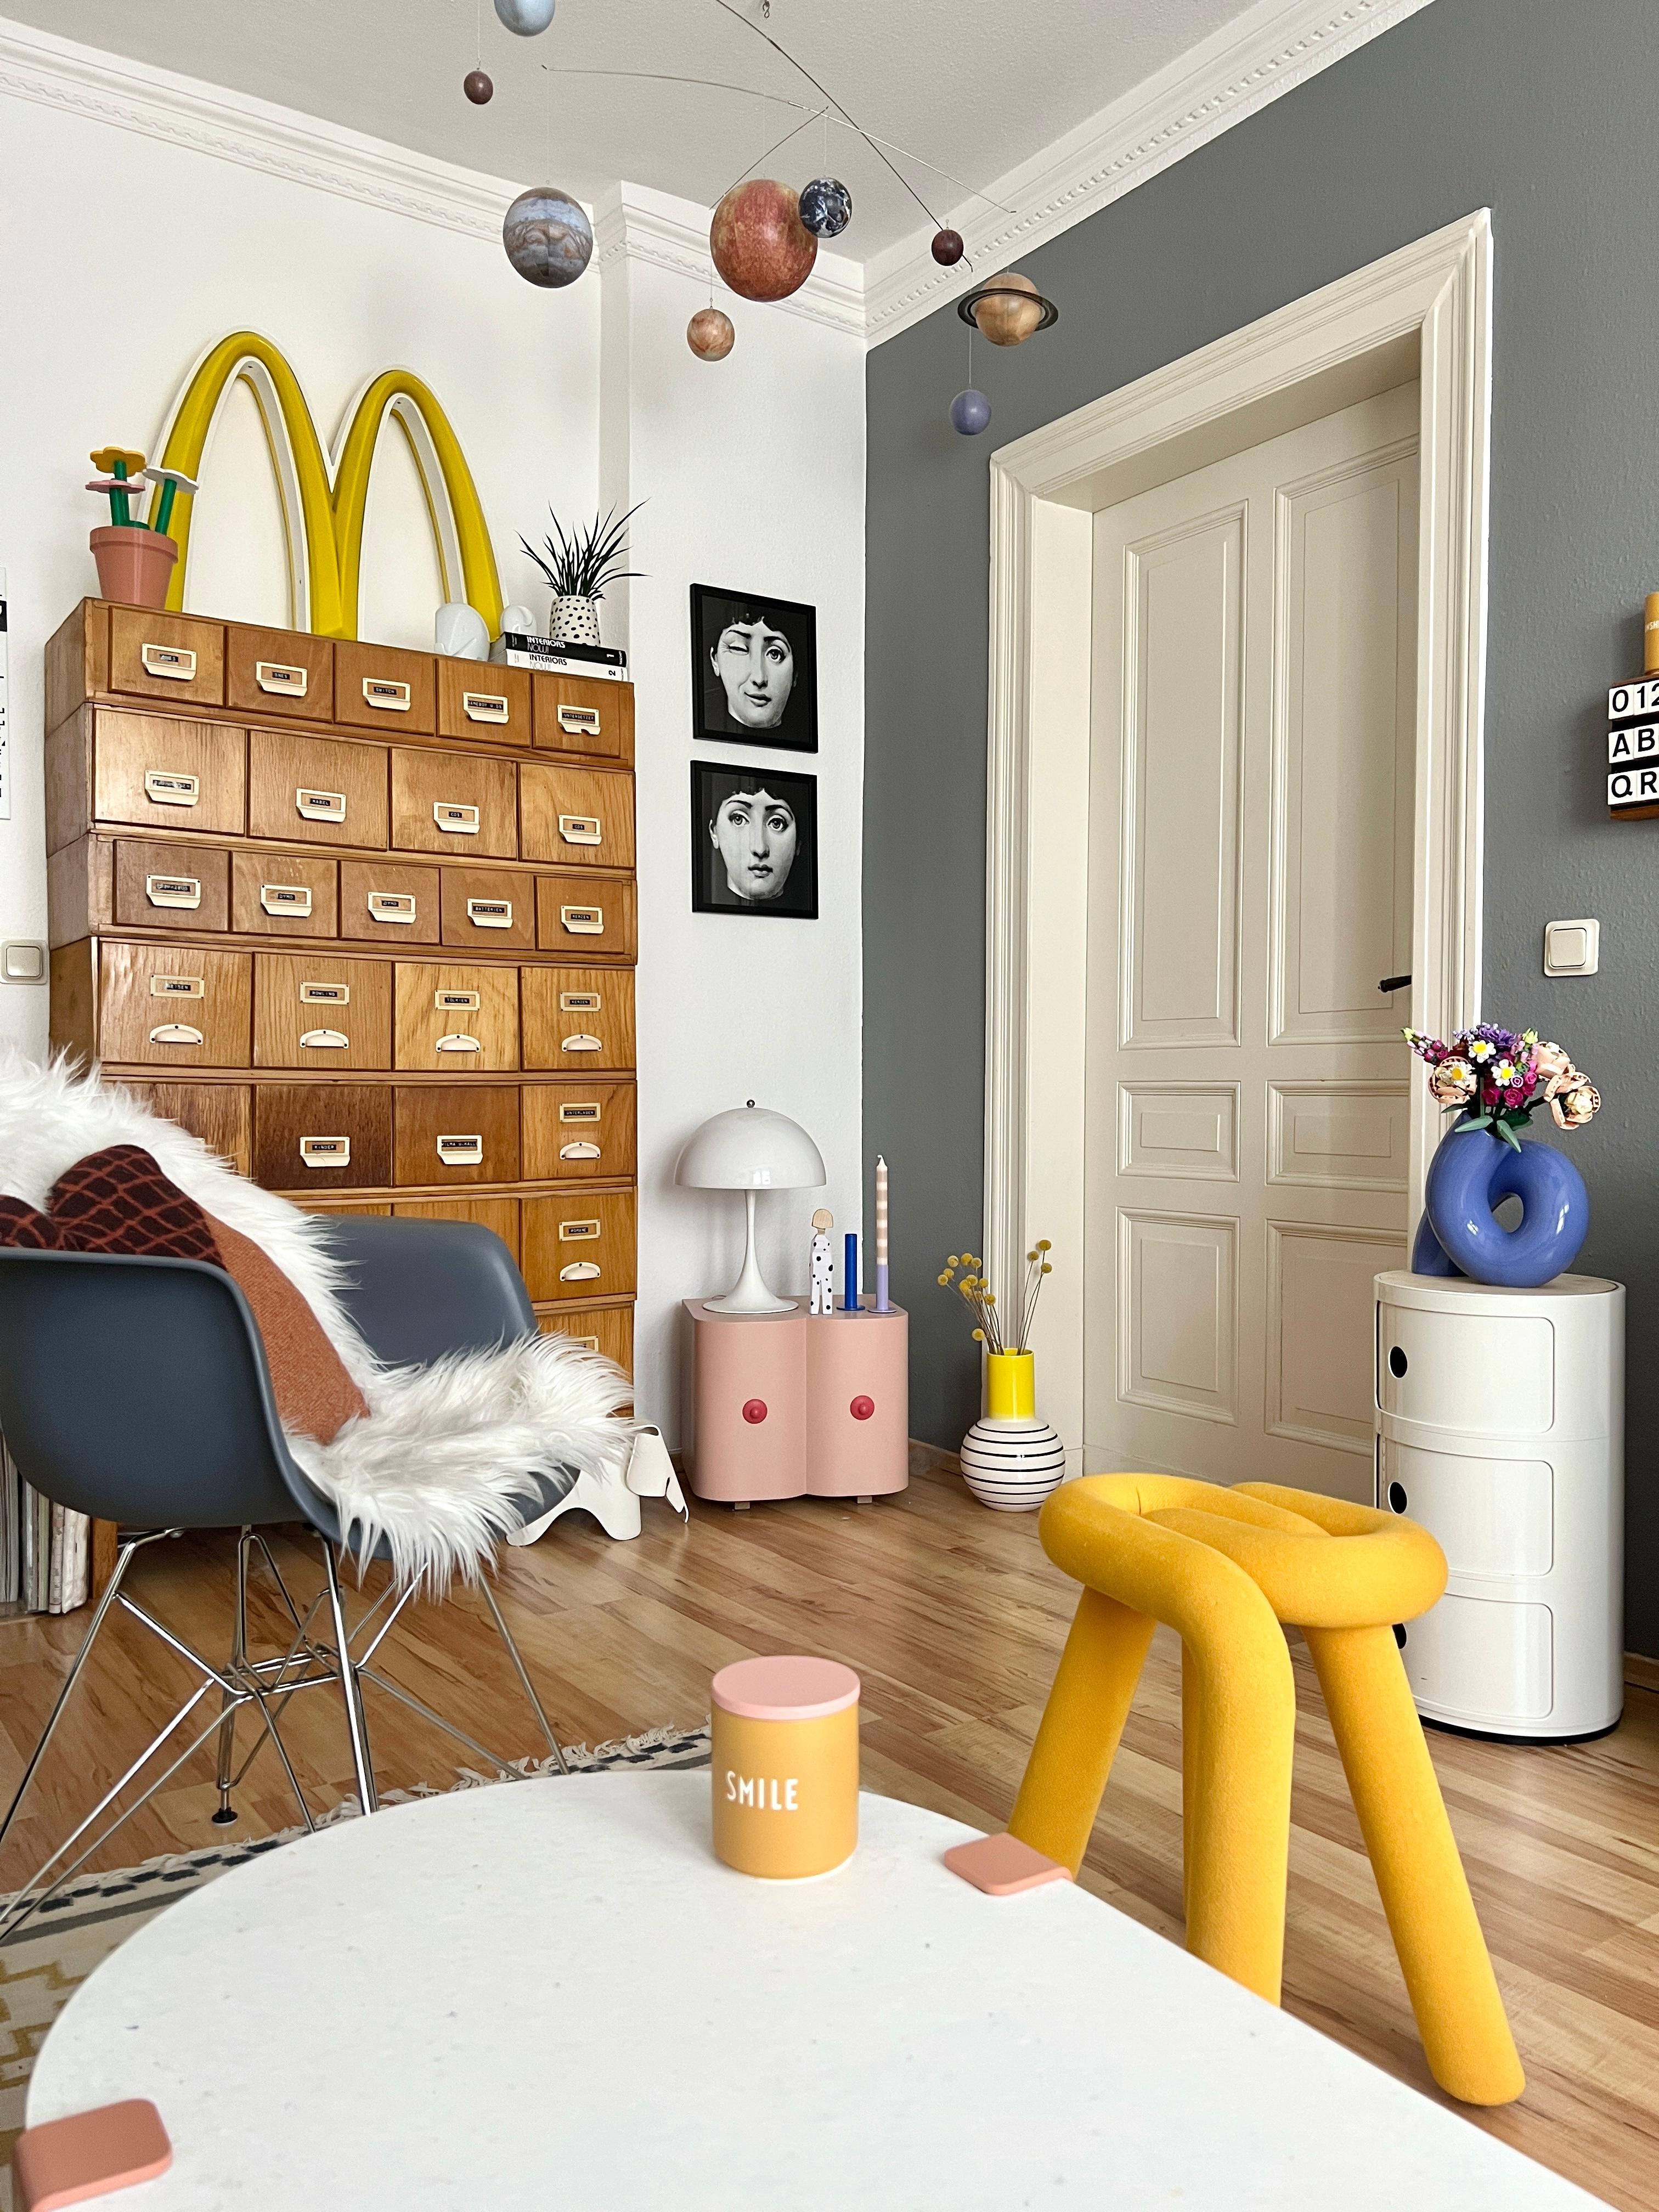 #interior #interiordesign #couchliebt #wohnzimmer #componibili #vintage #designletters #midcentury #flohmarktfund #gelb